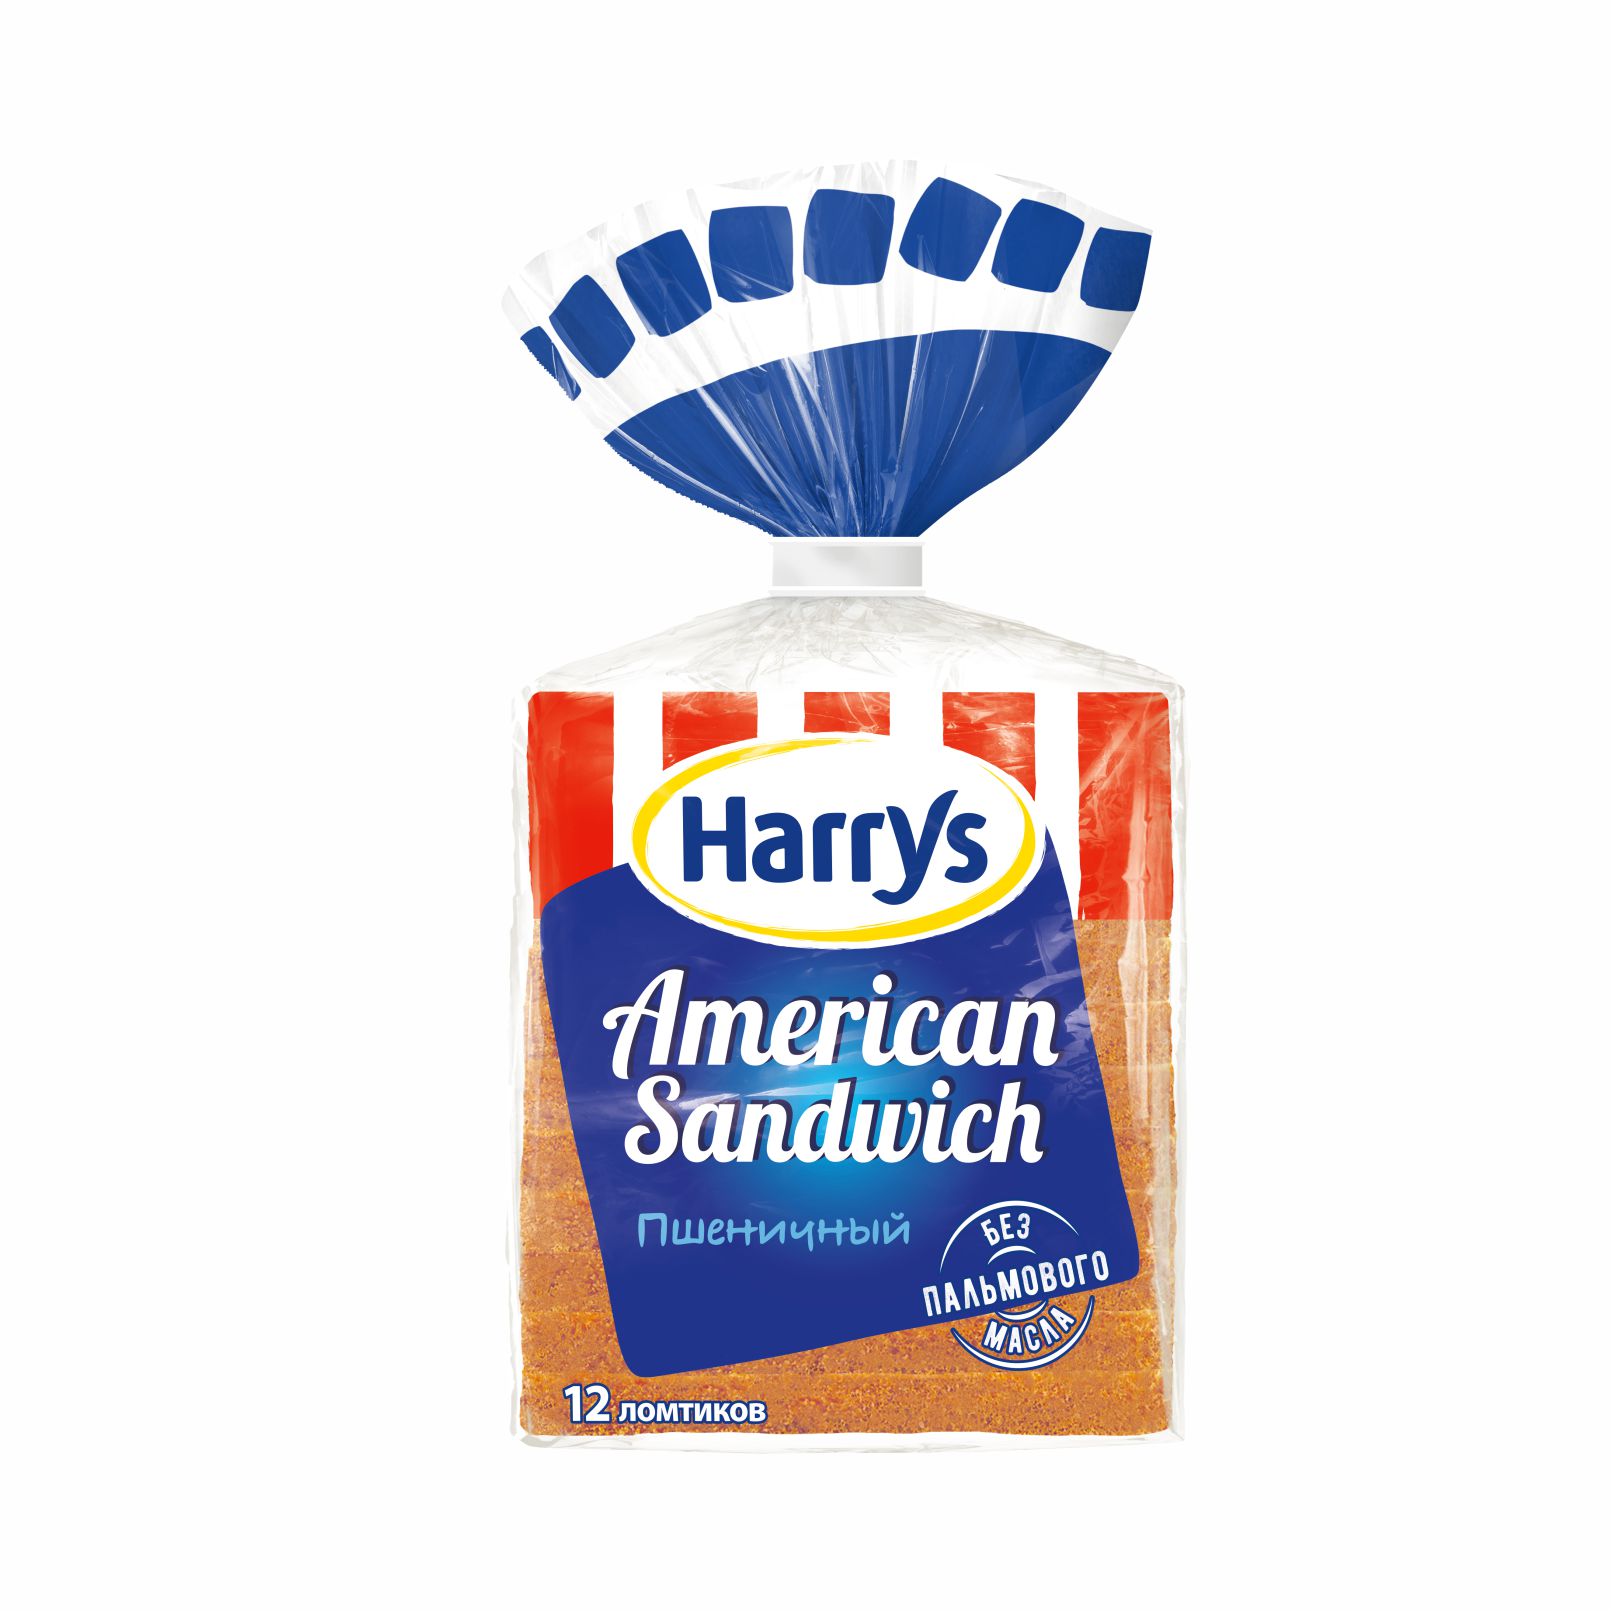 Хлеб Harrys American Sandwich 470 г мука бело нежная пшеничная хлебопекарная в с 2кг 1шт